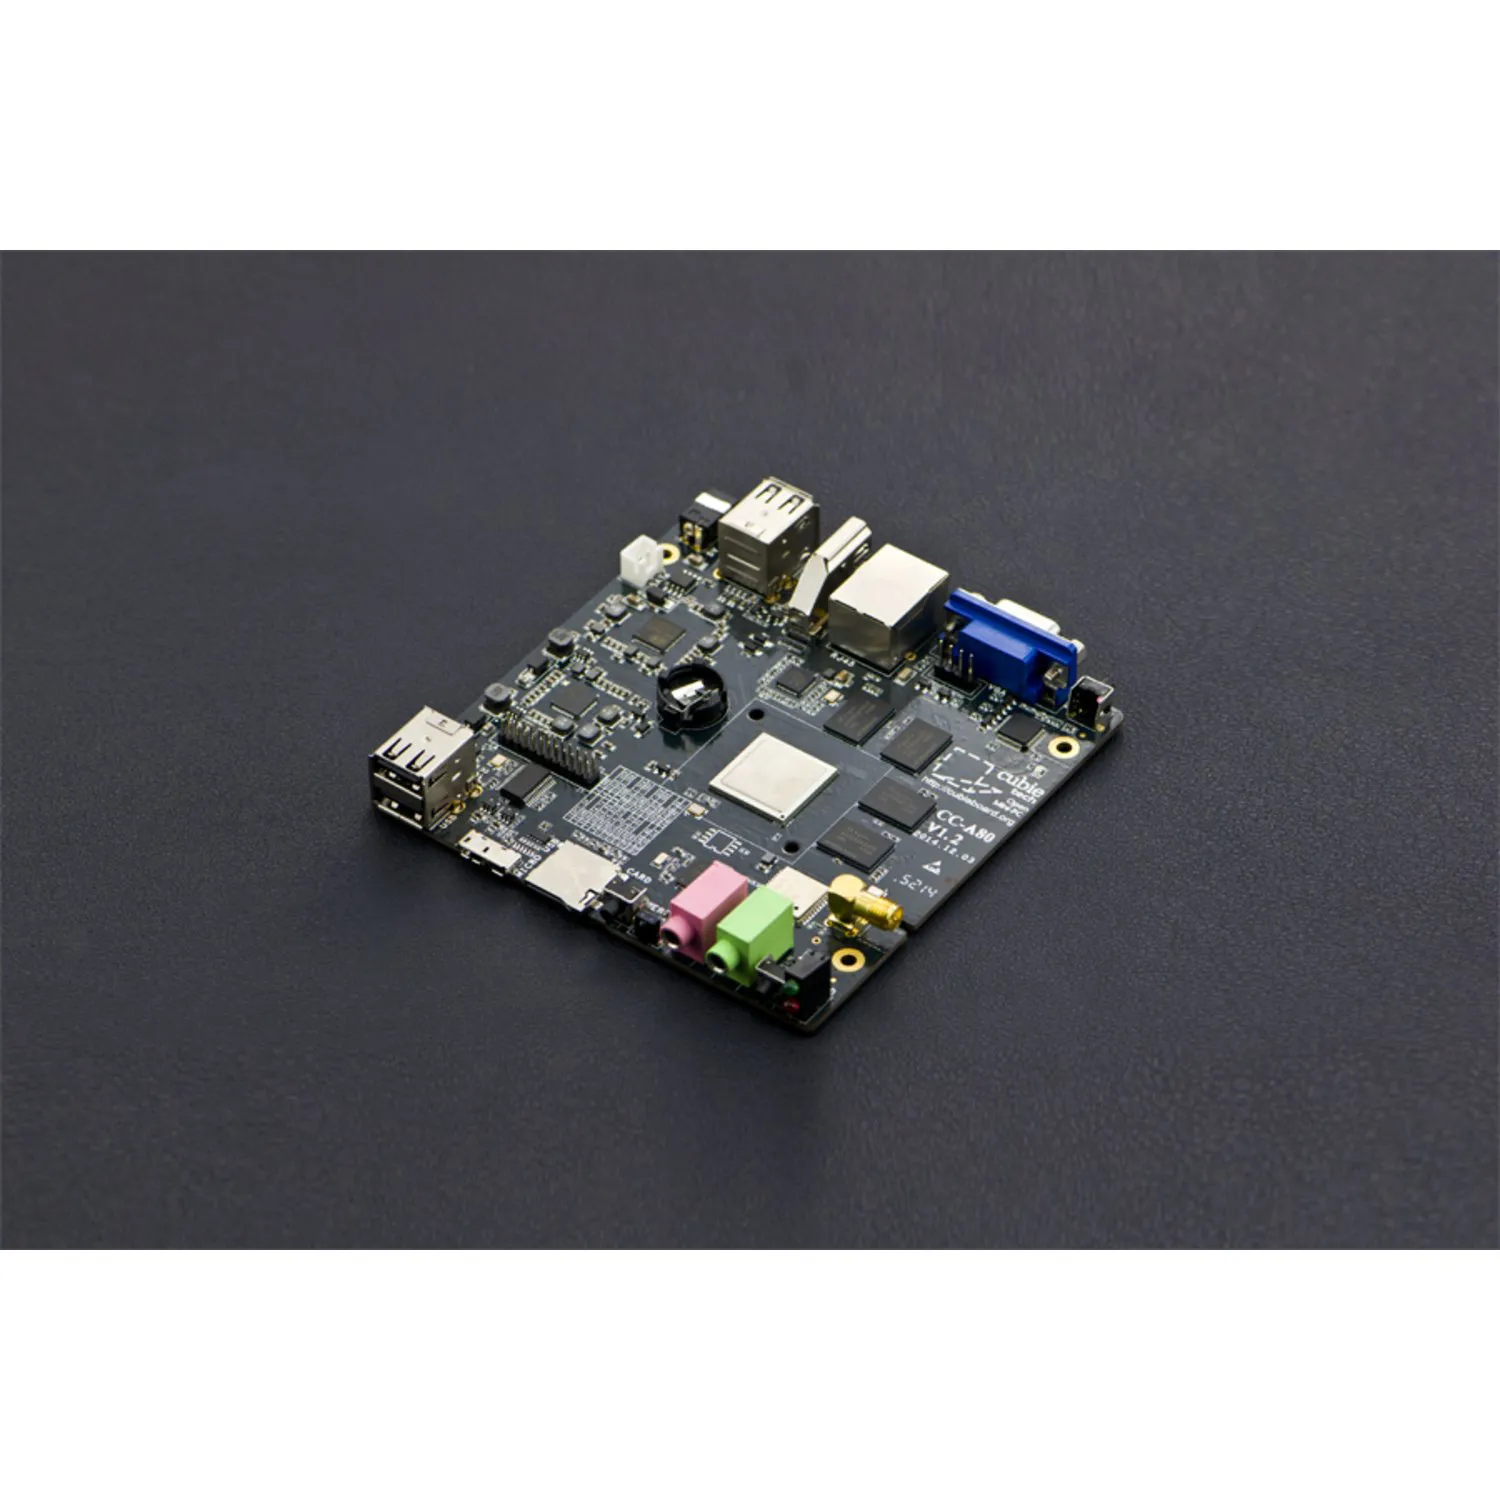 Photo of Cubieboard4 CC-A80 High-Performance Mini PC Development Board